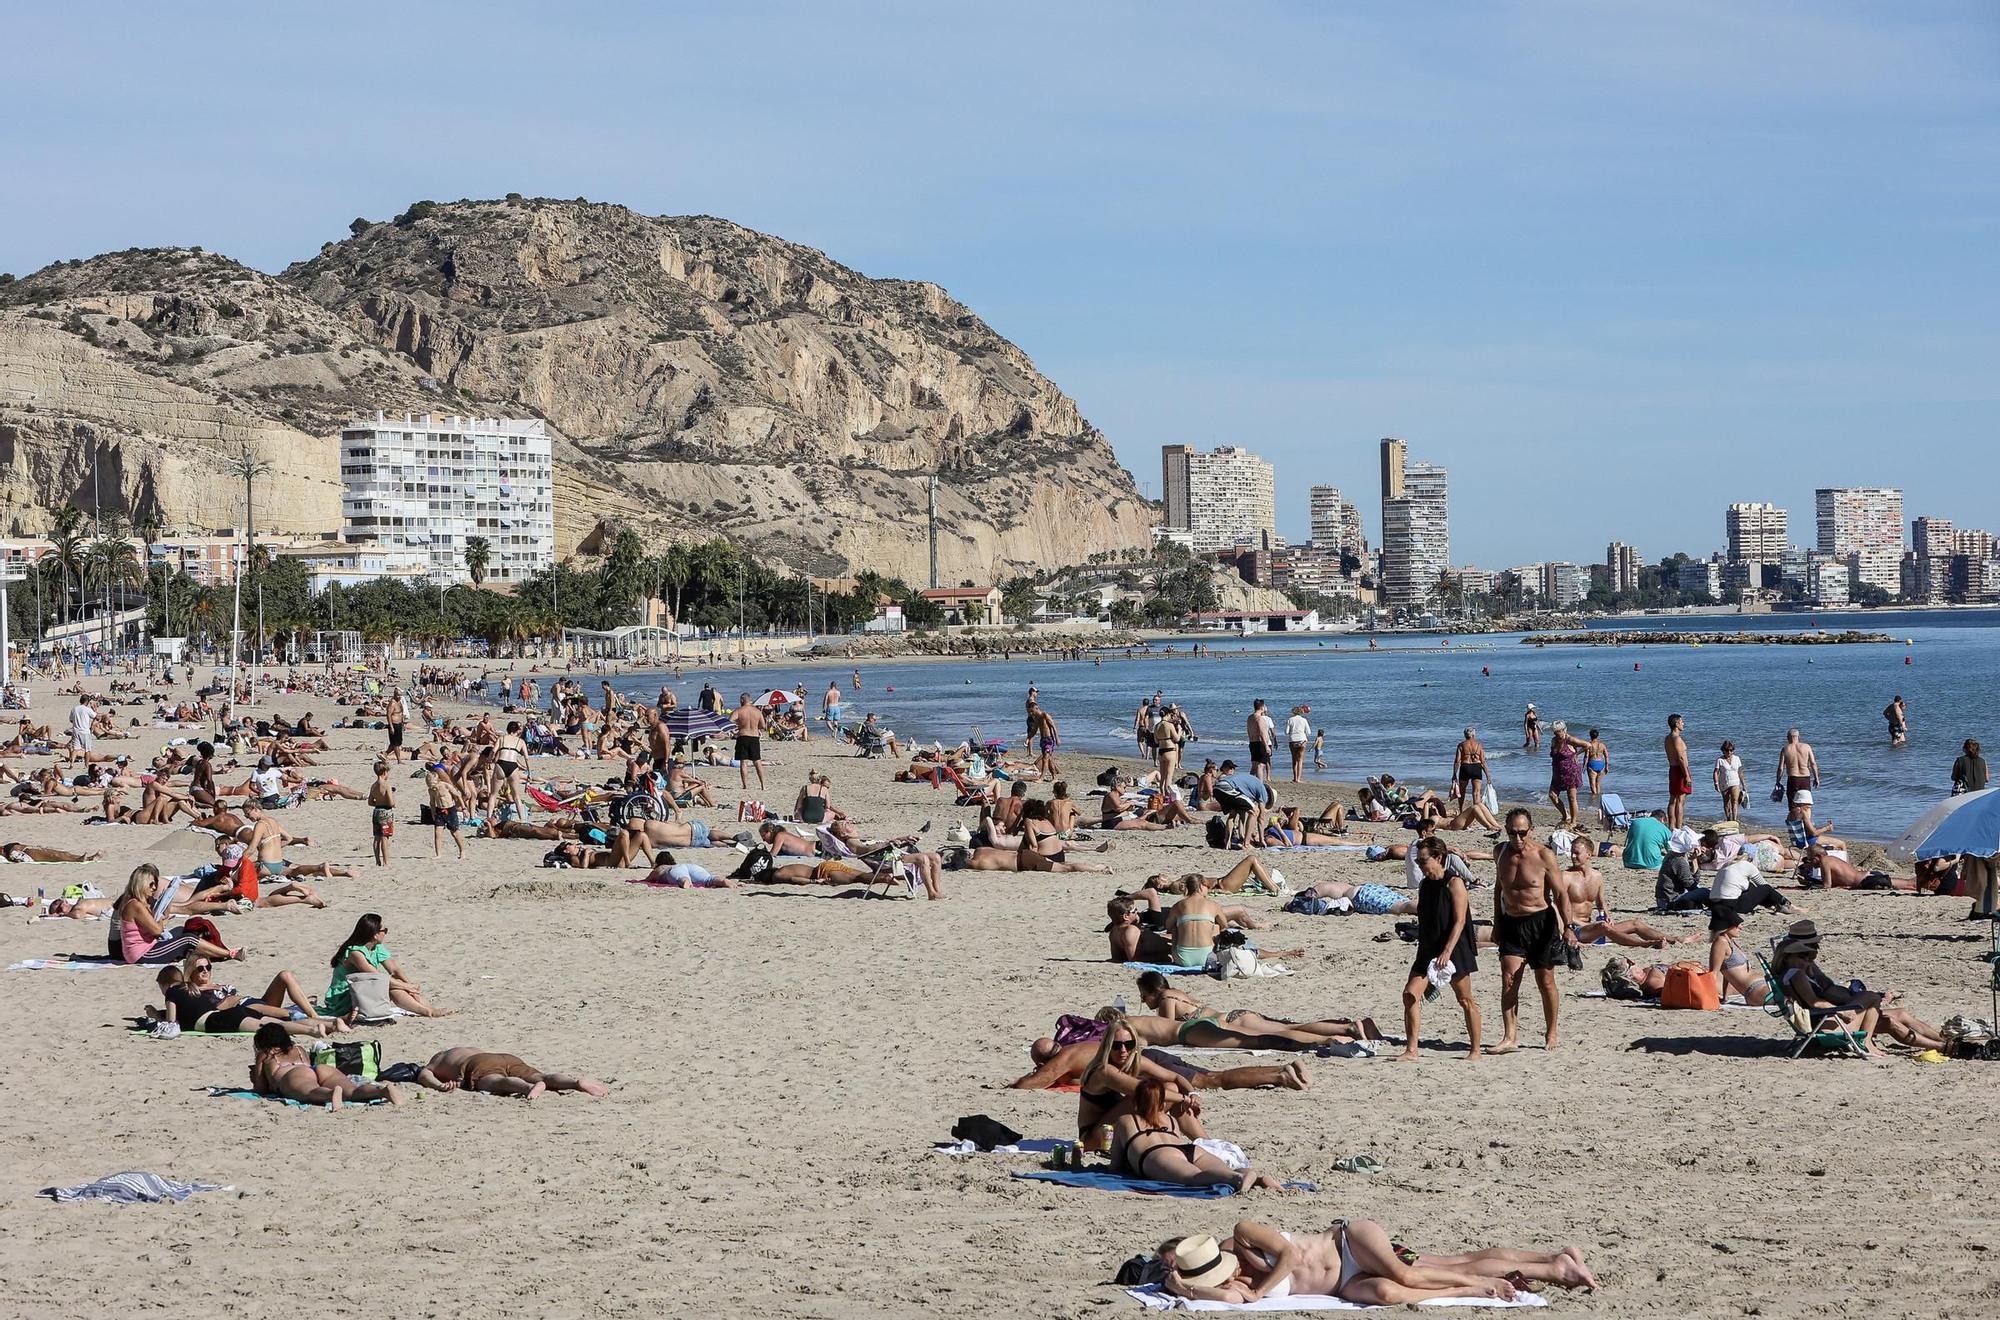 Las altas temperaturas a mediados de noviembre llenan las playas de turistas y visitantes